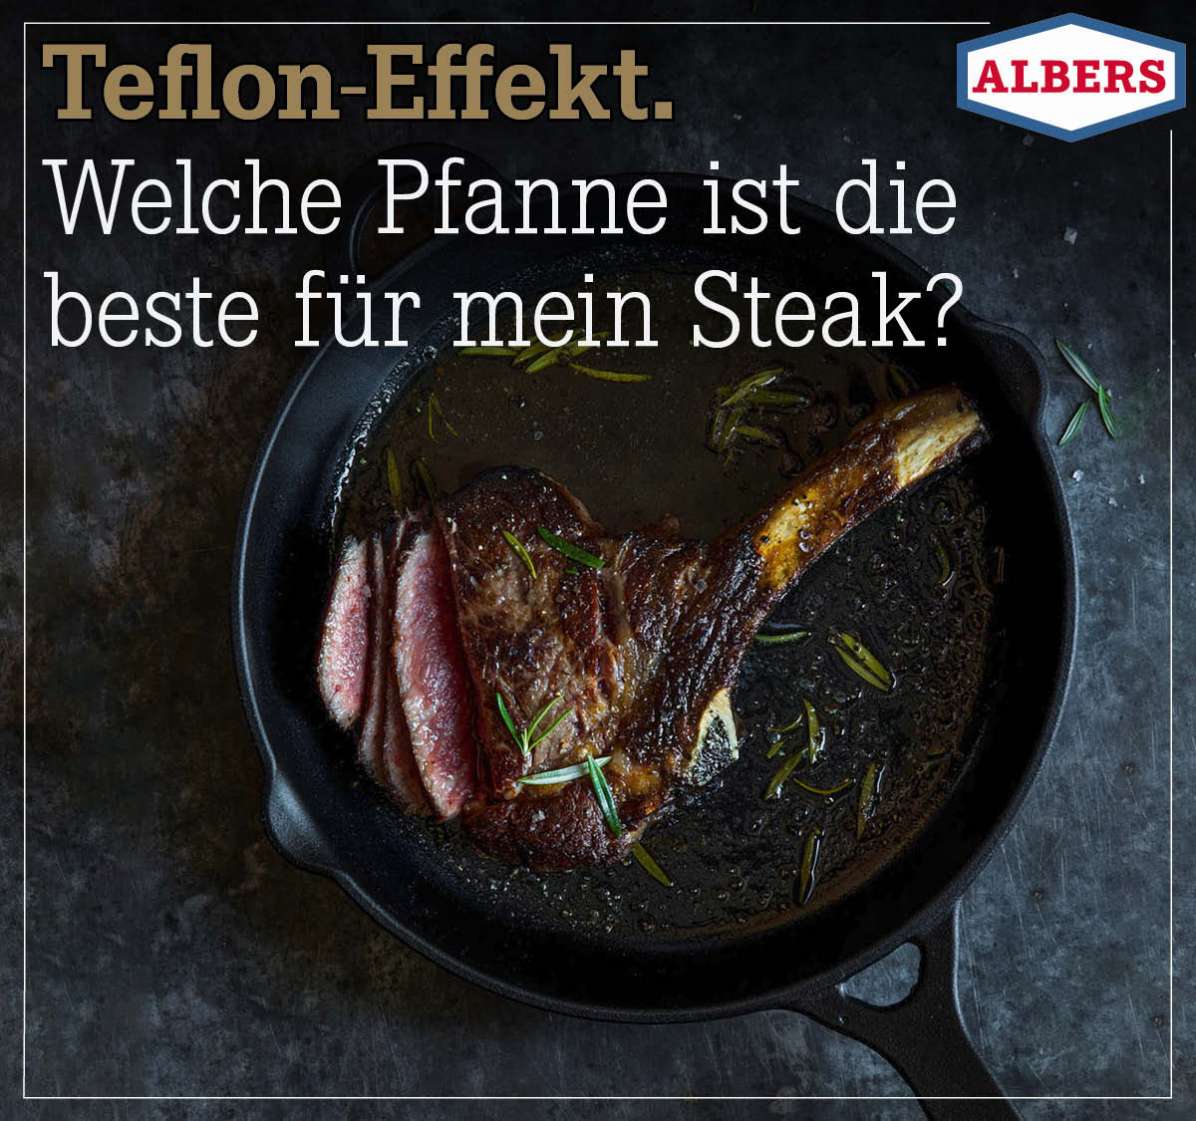 Teflon-Effekt. Welche Pfanne ist die beste für mein Steak?